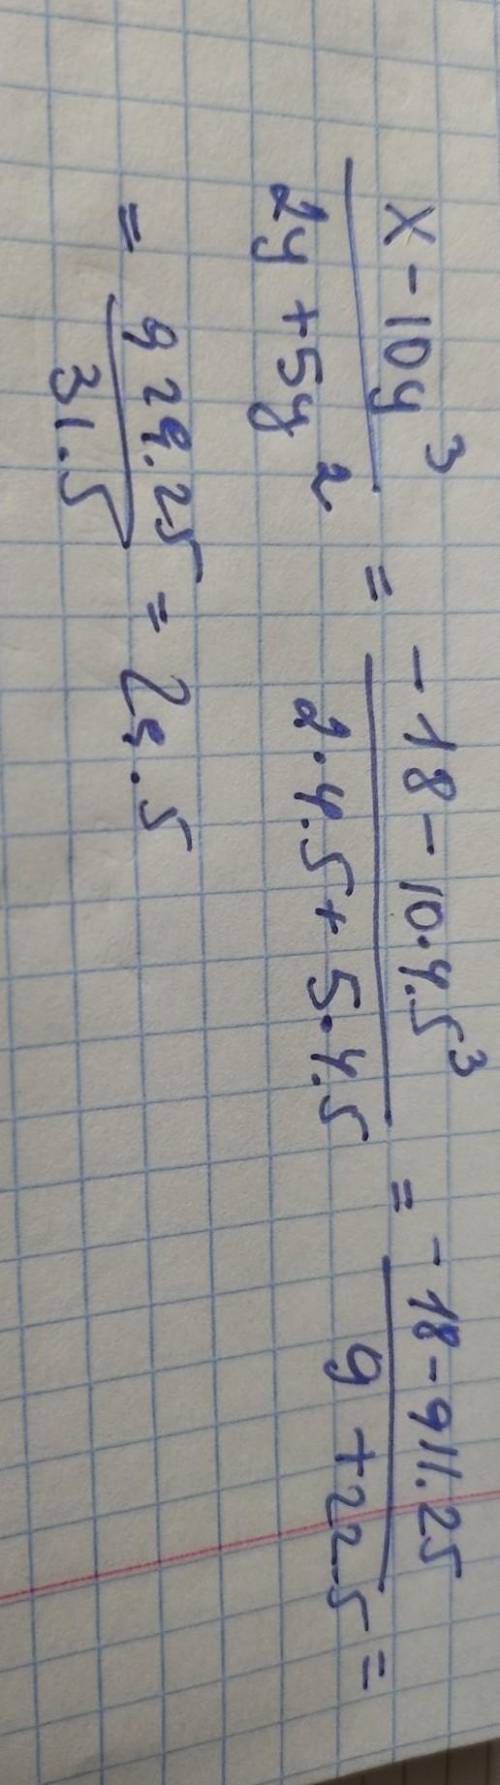 Упростите выражение х-10у³/2у+5у² и найдите значение этого выражения при х = -18 у = 4,5​​